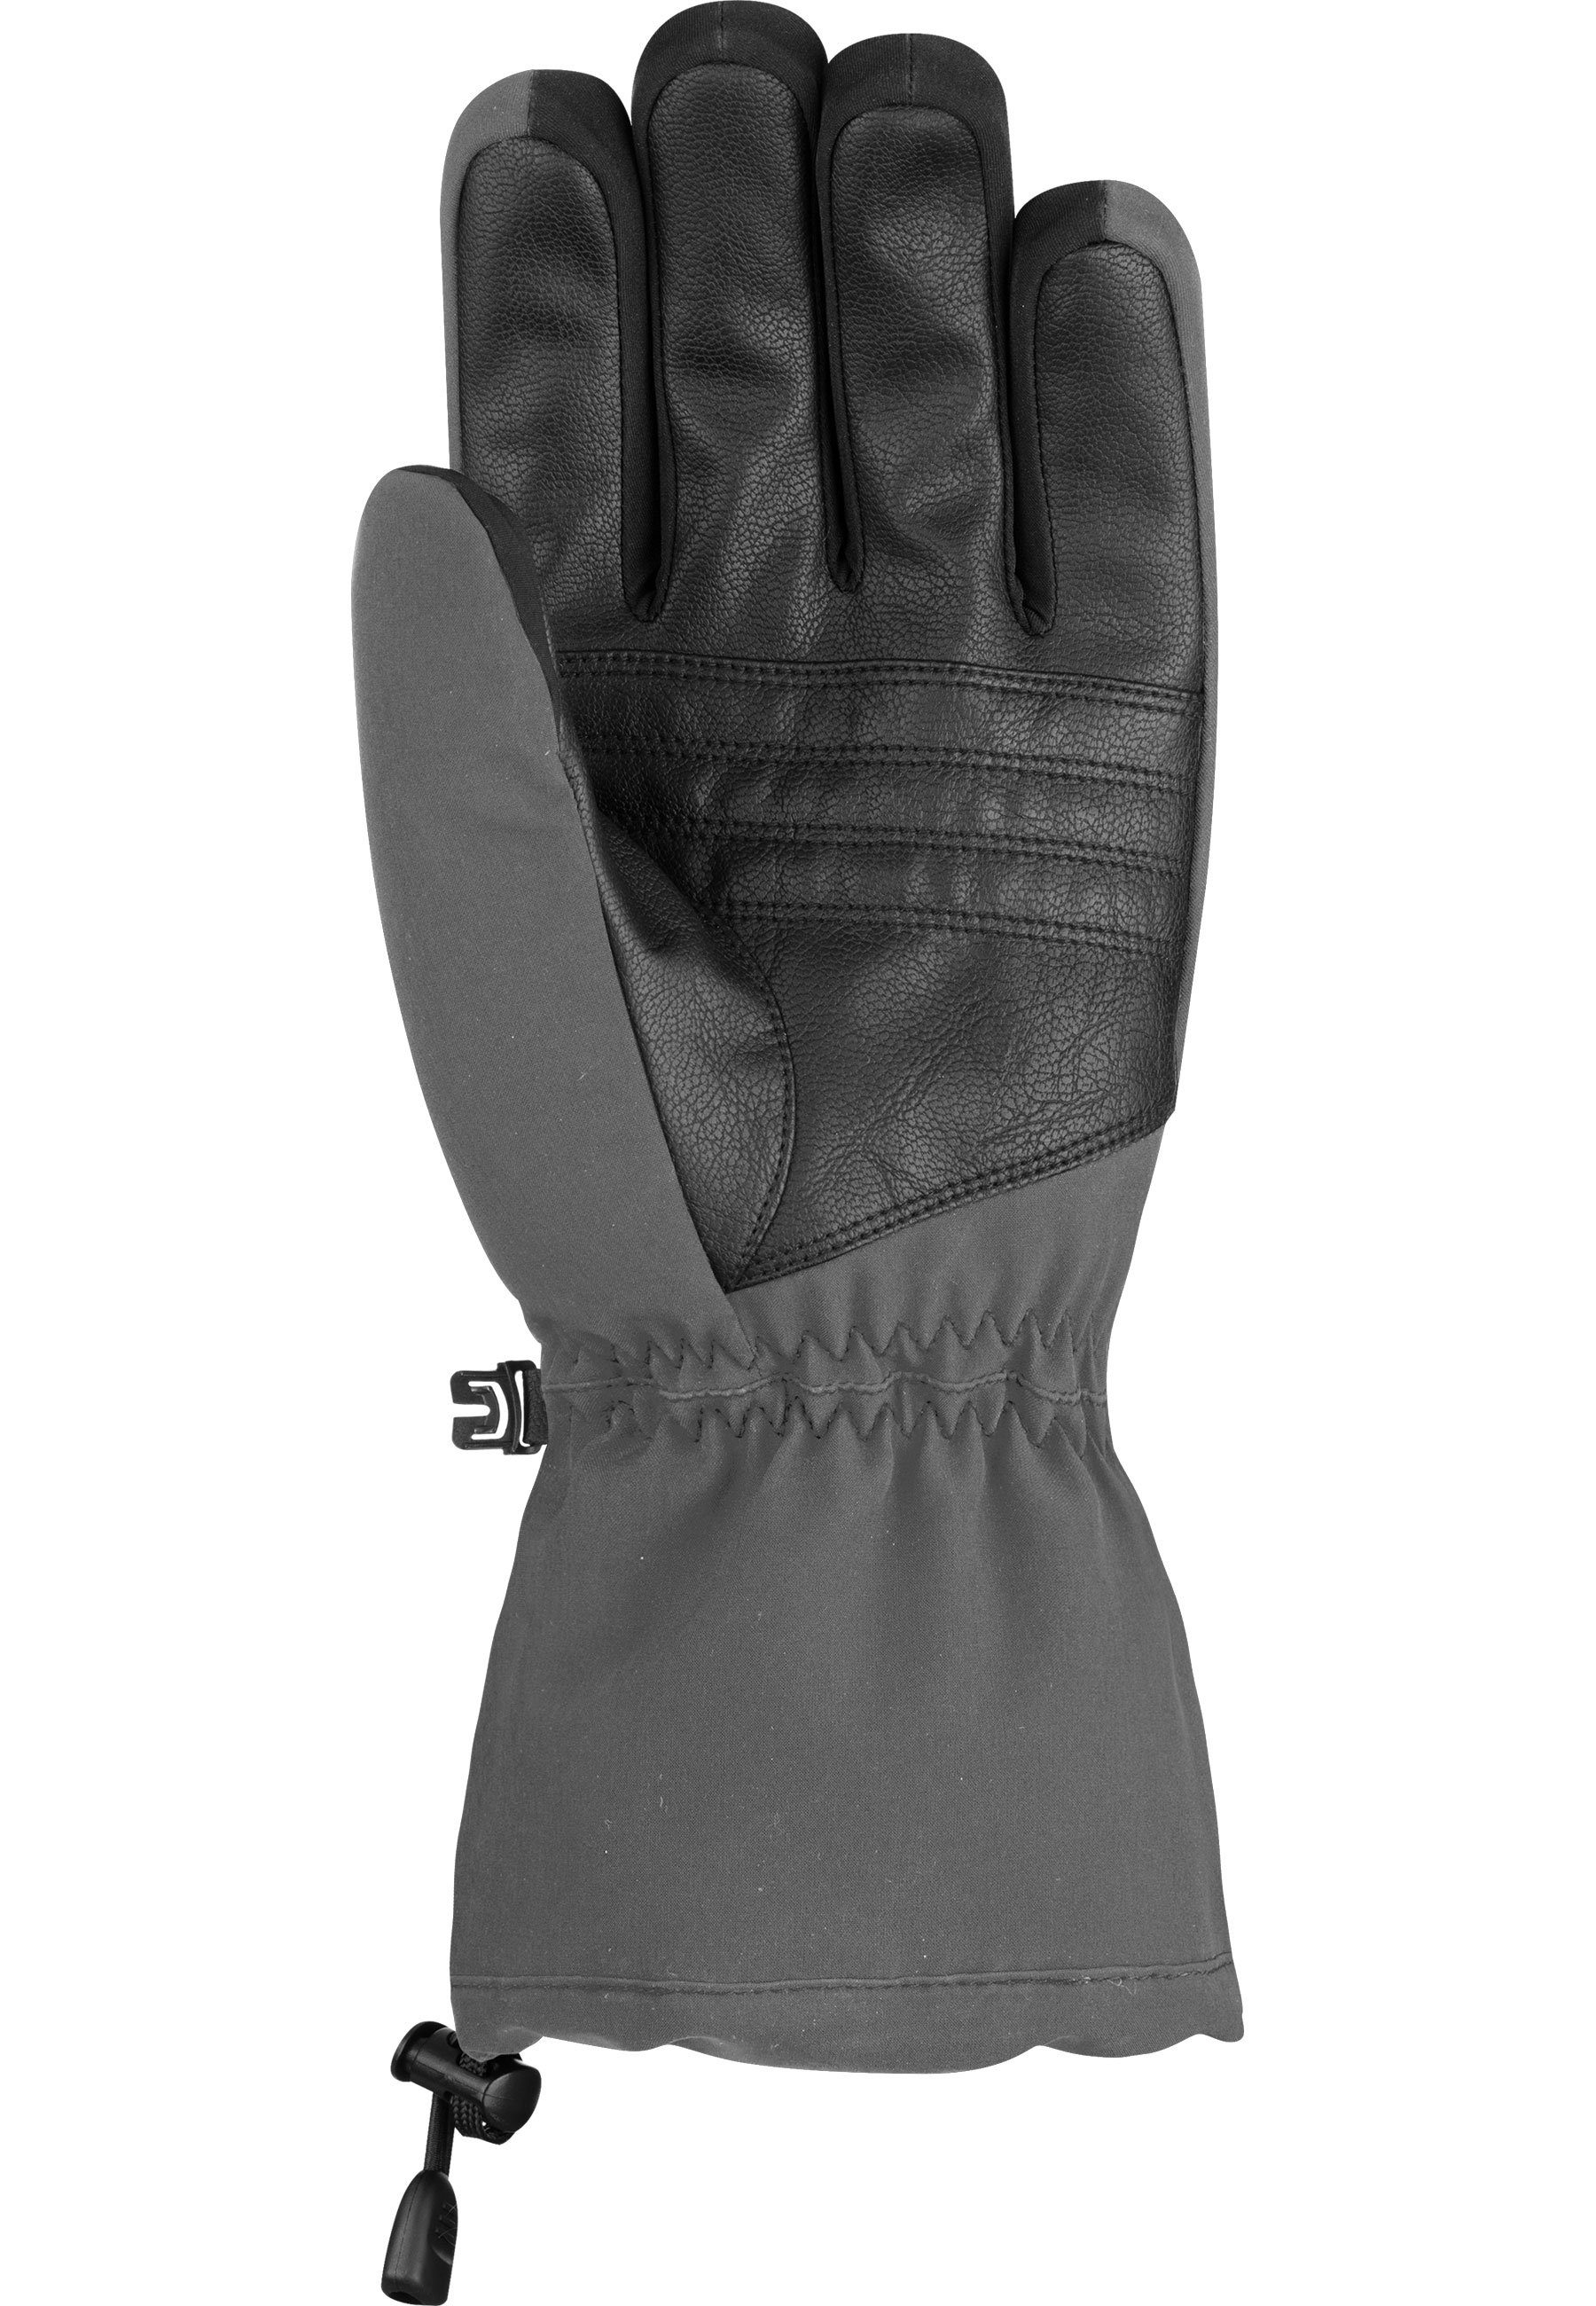 R-TEX® und atmungsaktivem Kondor Reusch Skihandschuhe in Design grau-schwarz XT wasserdichtem